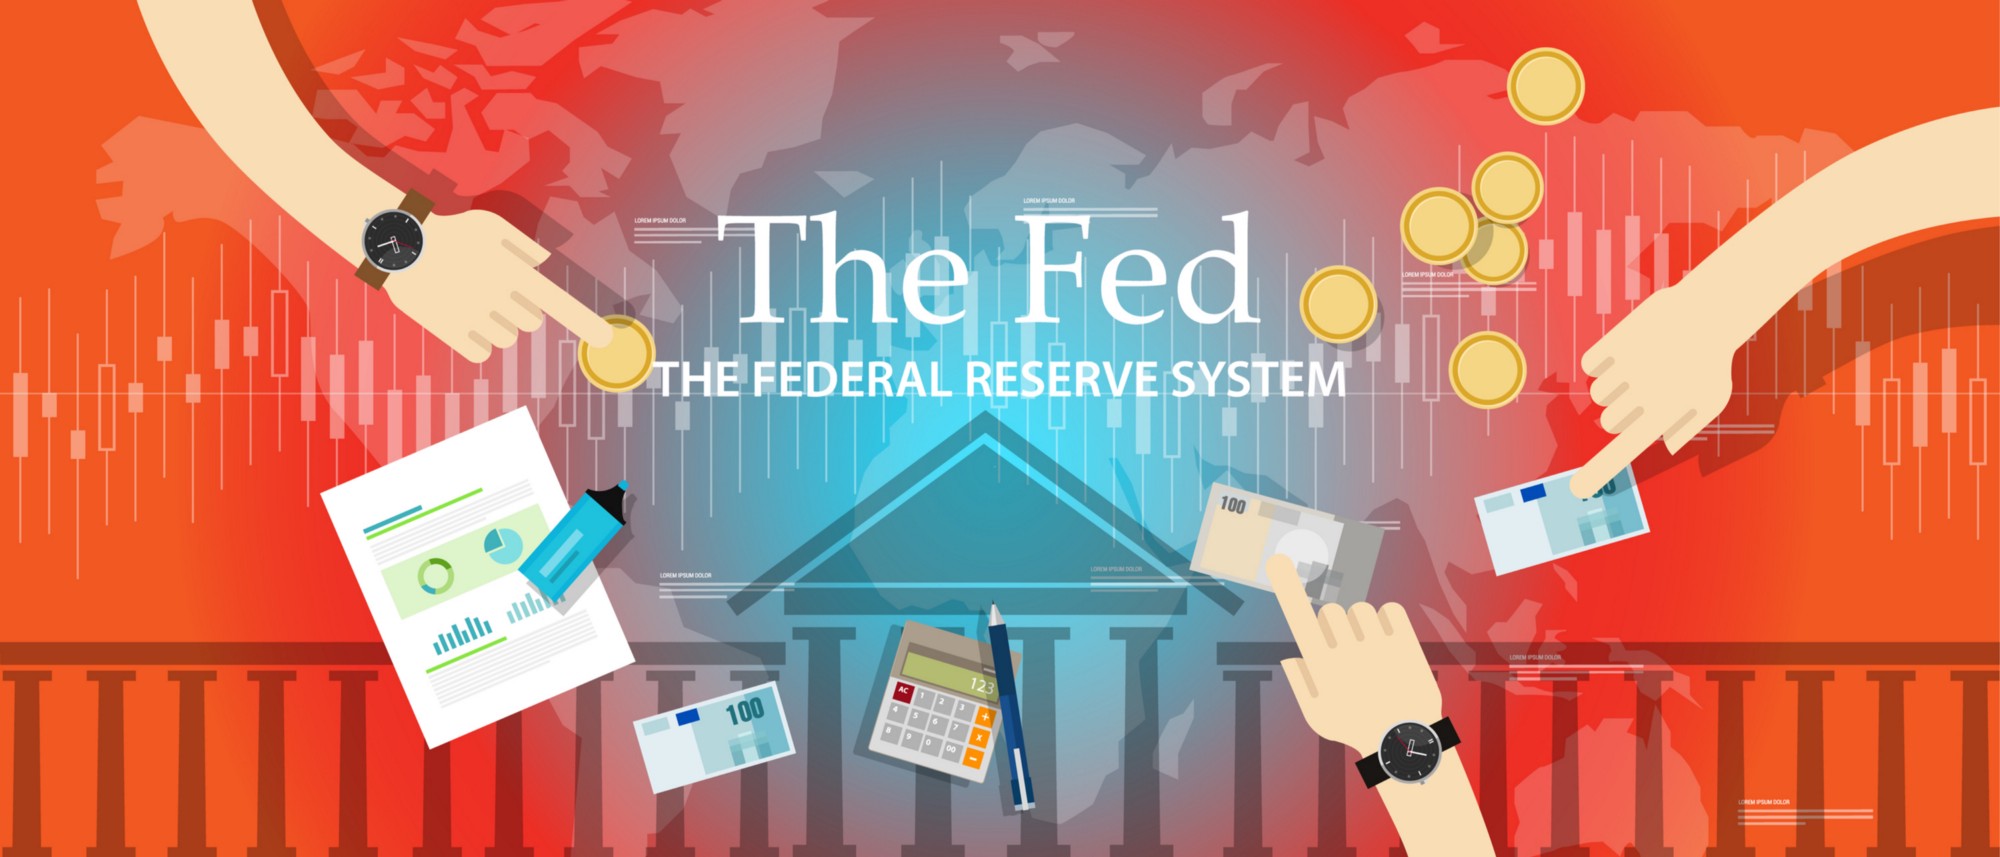 Ba công cụ chính FED sử dụng để tác động đến chính sách tiền tệ